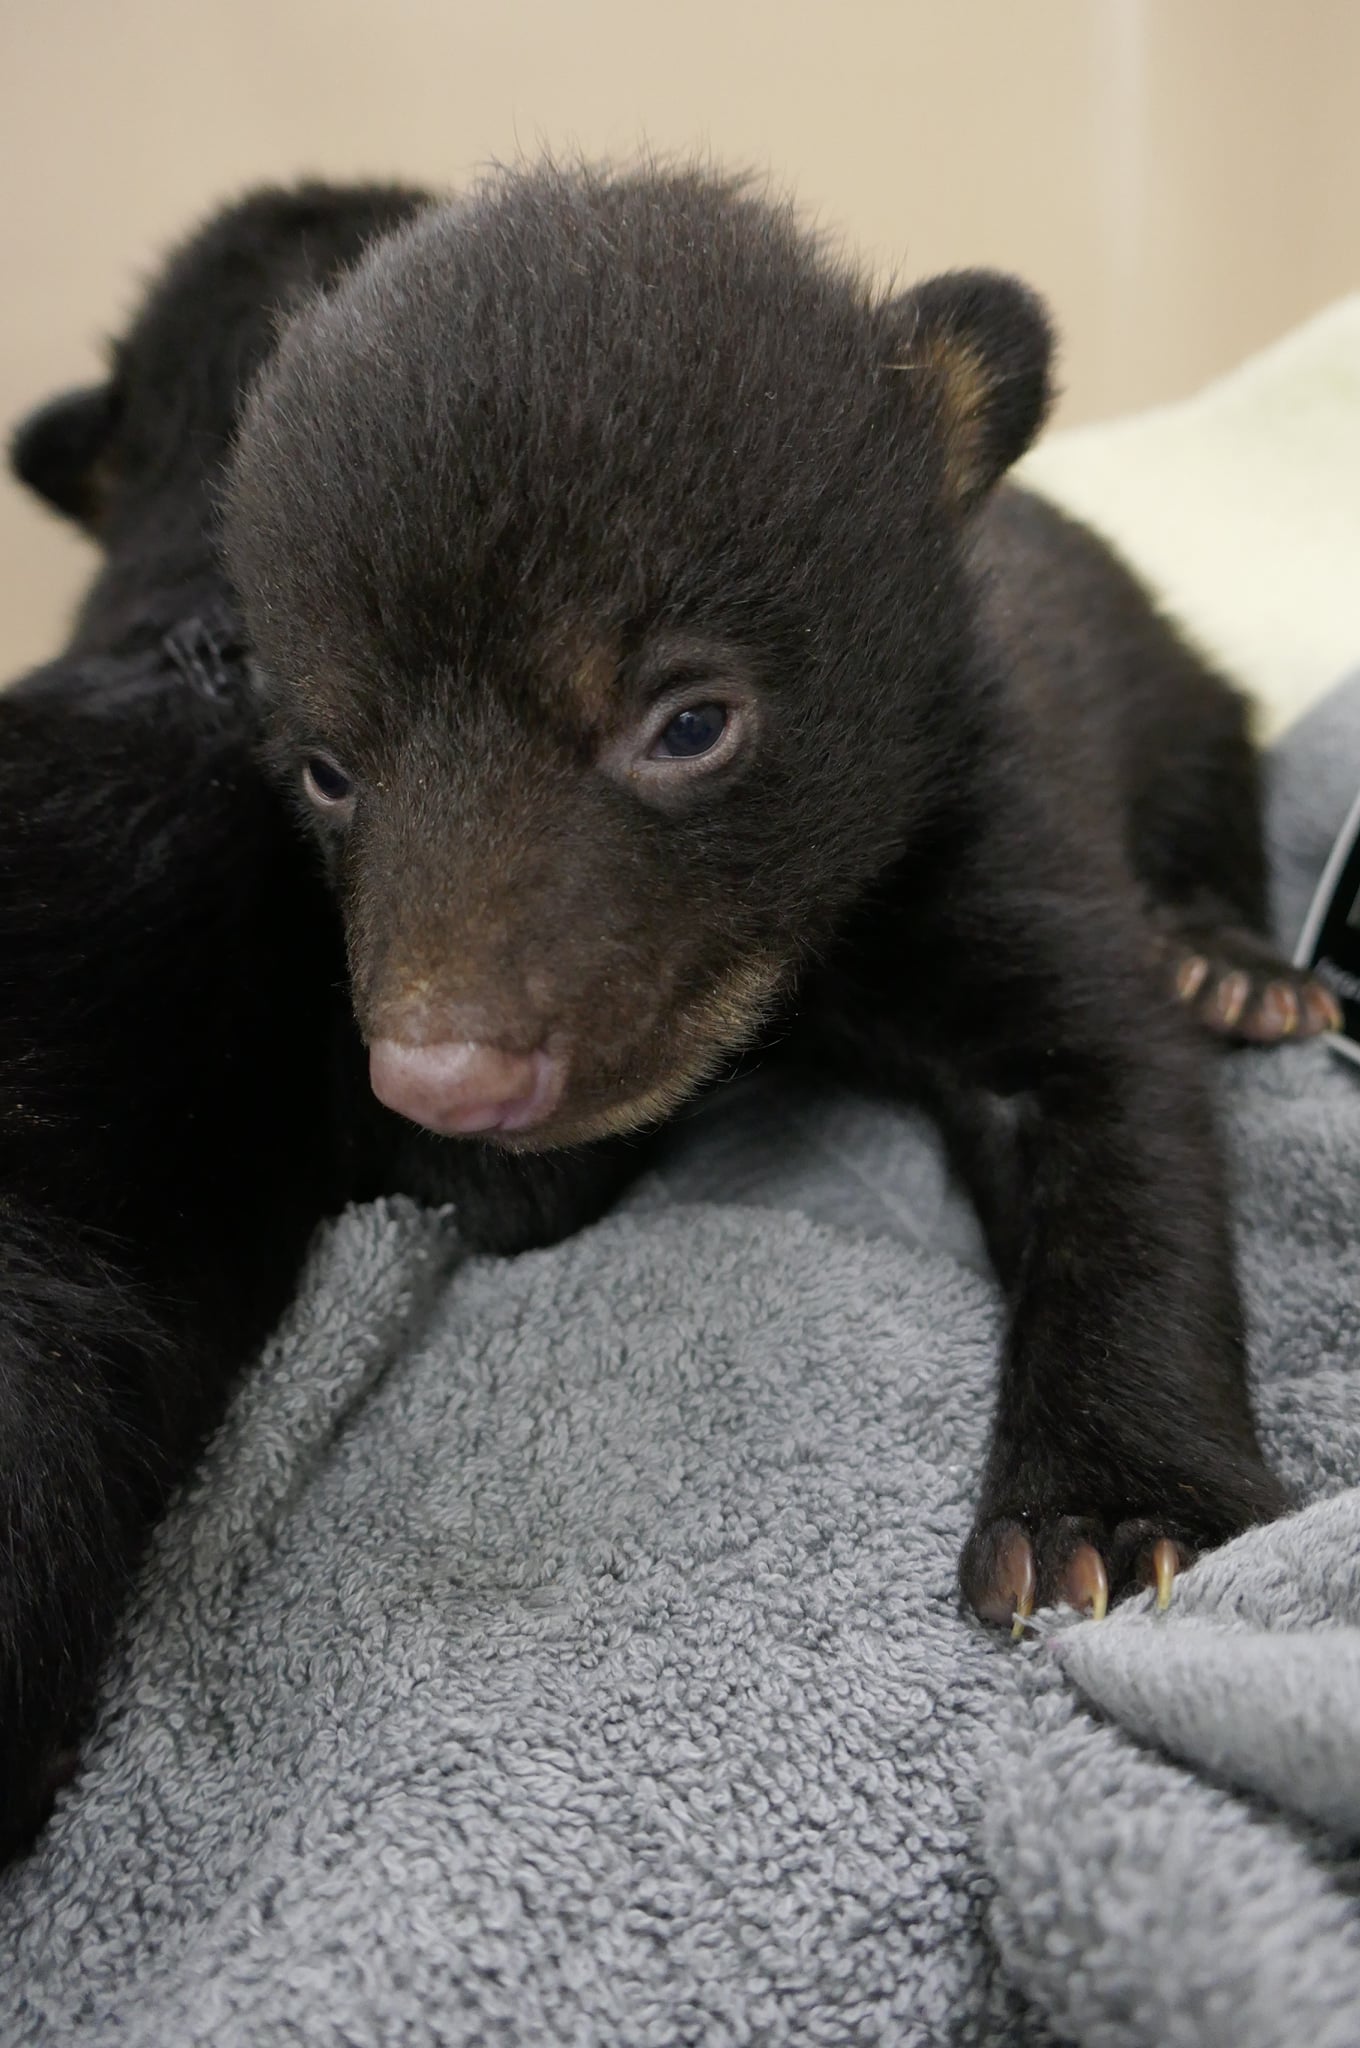 A bear cubs sits on a blanket